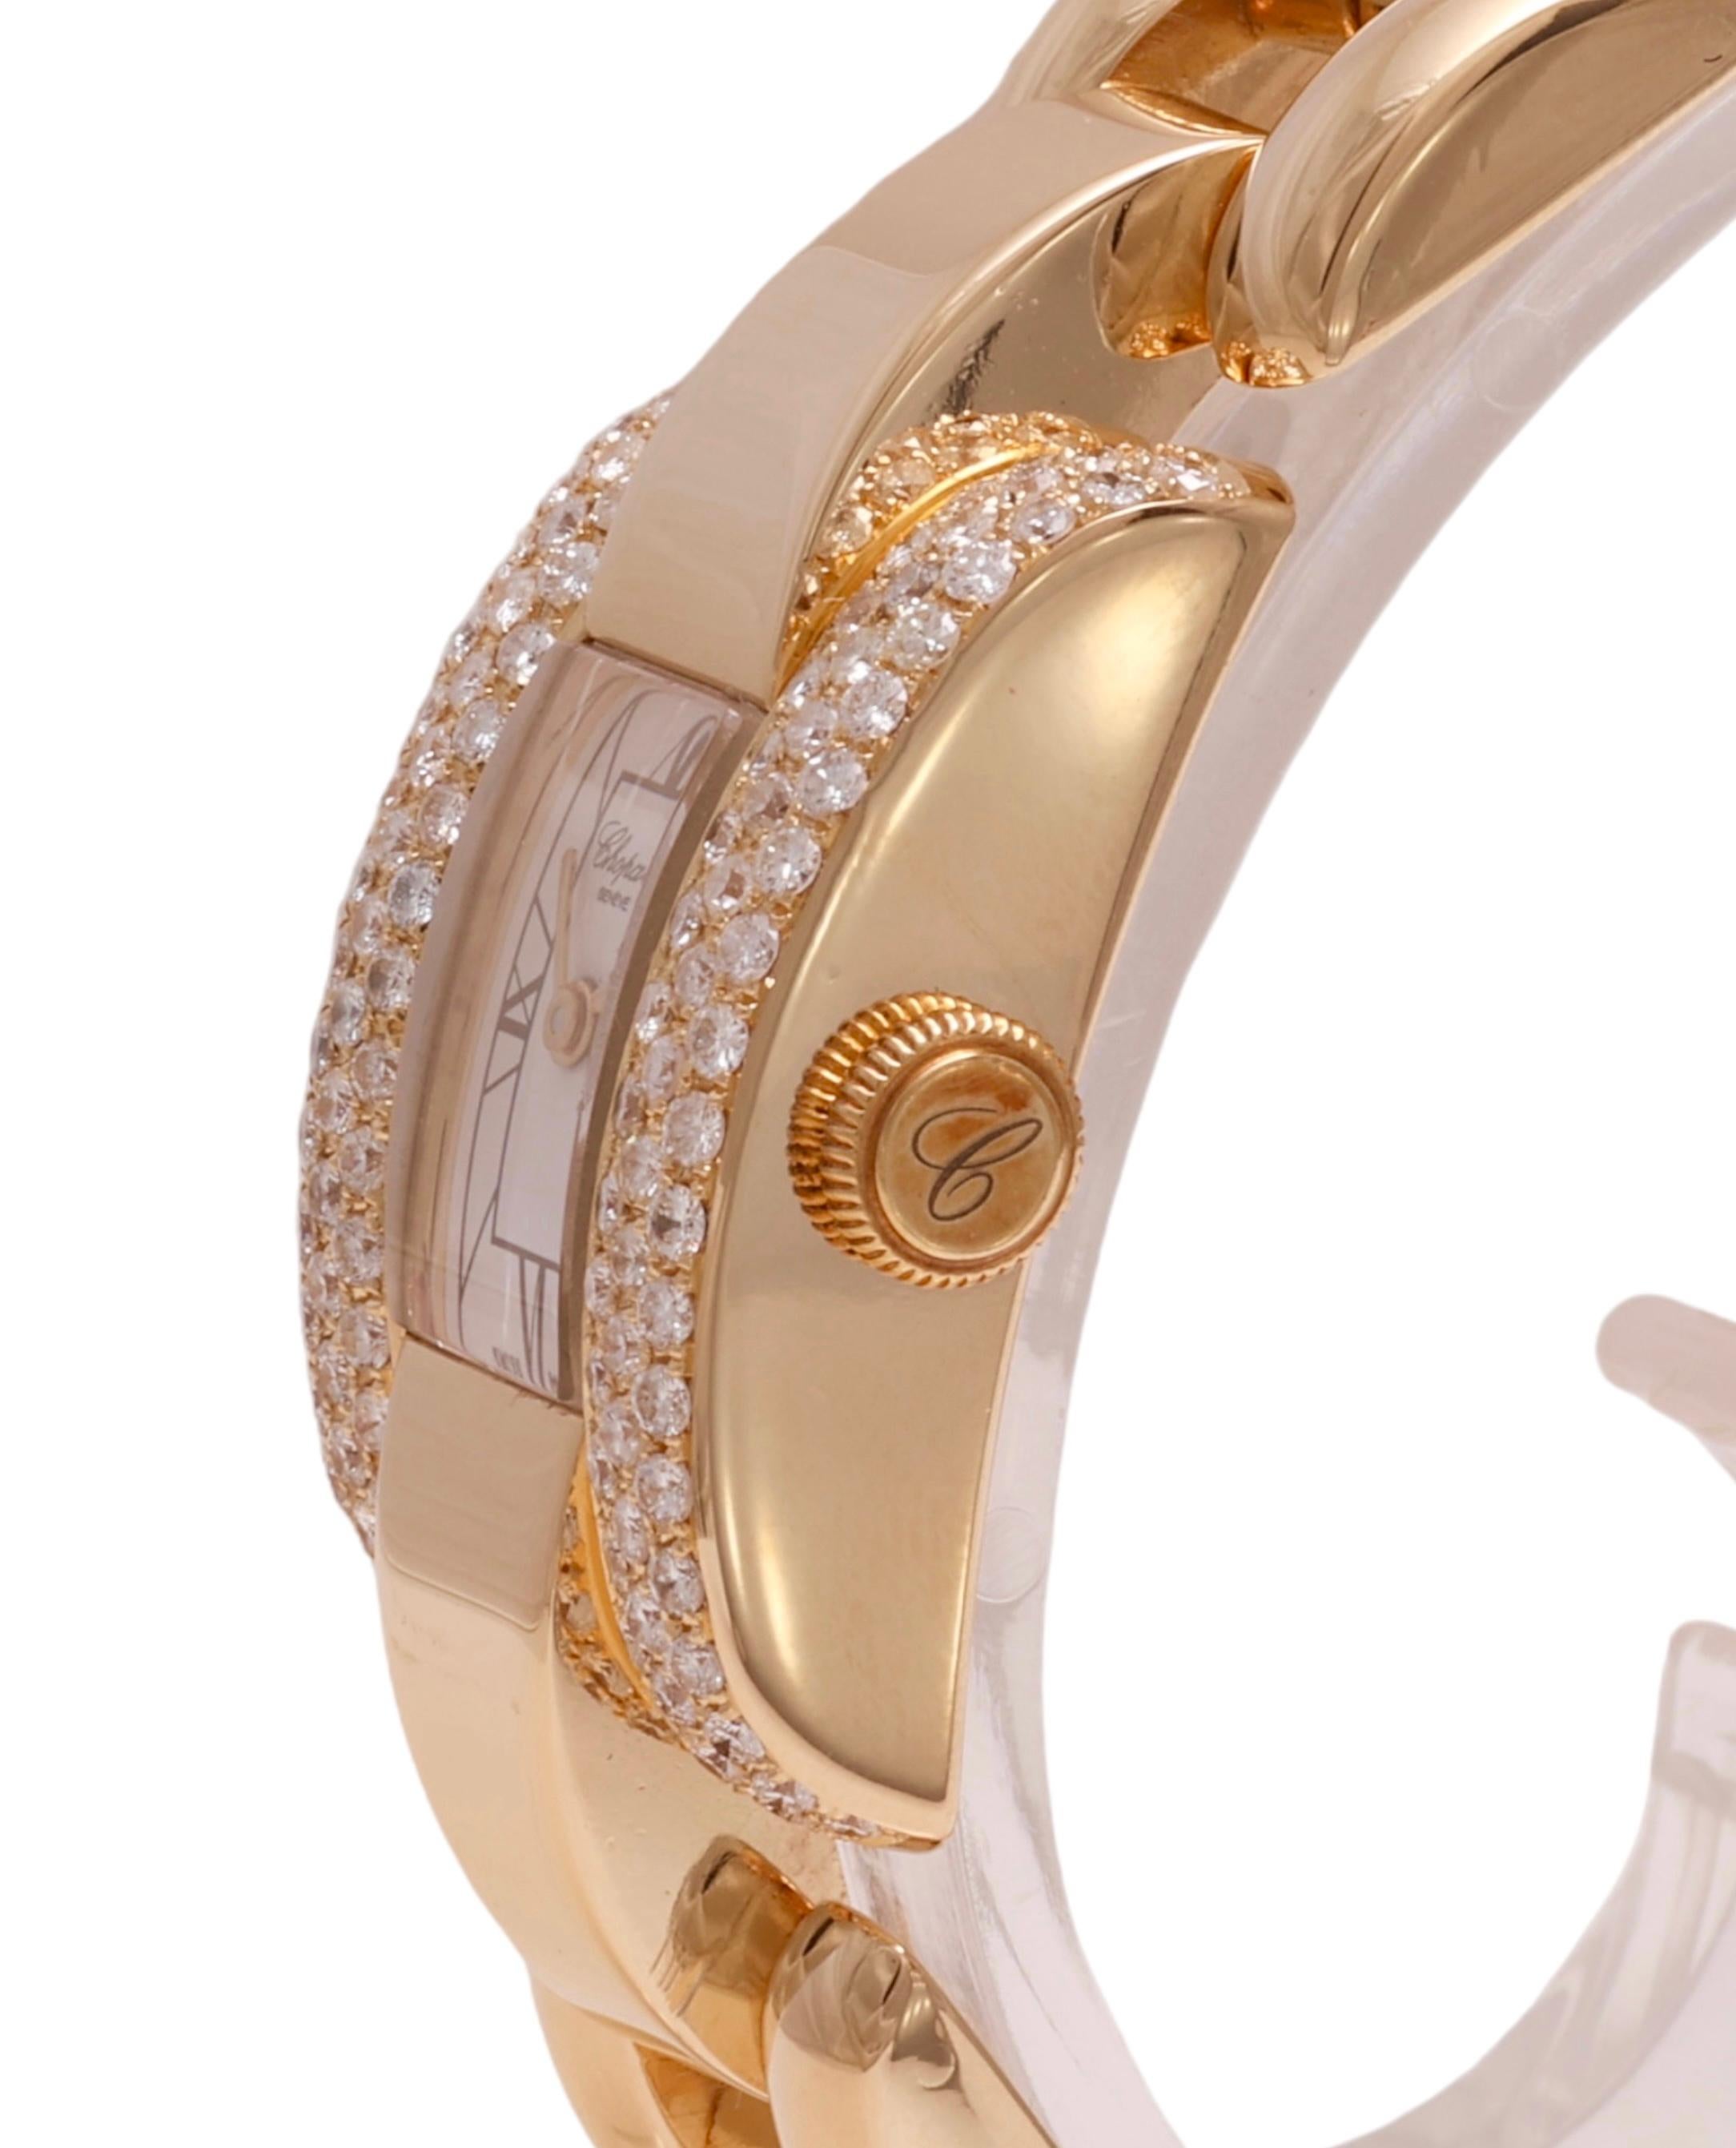 18 Kt. Gold & Diamonds Chopard La Strada Wrist Watch For Sale 5